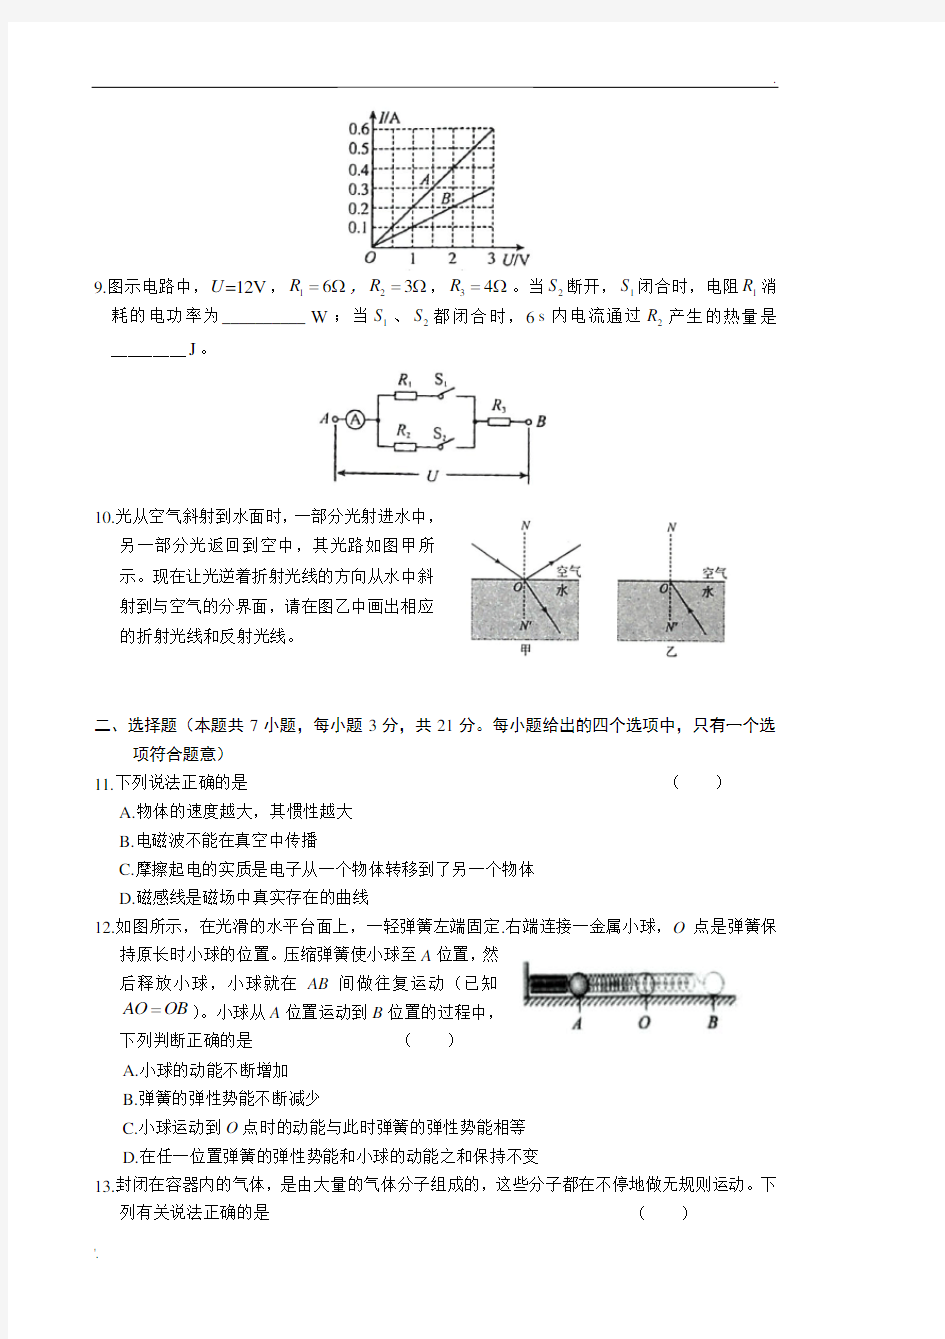 2019年安徽省中考物理试题、答案